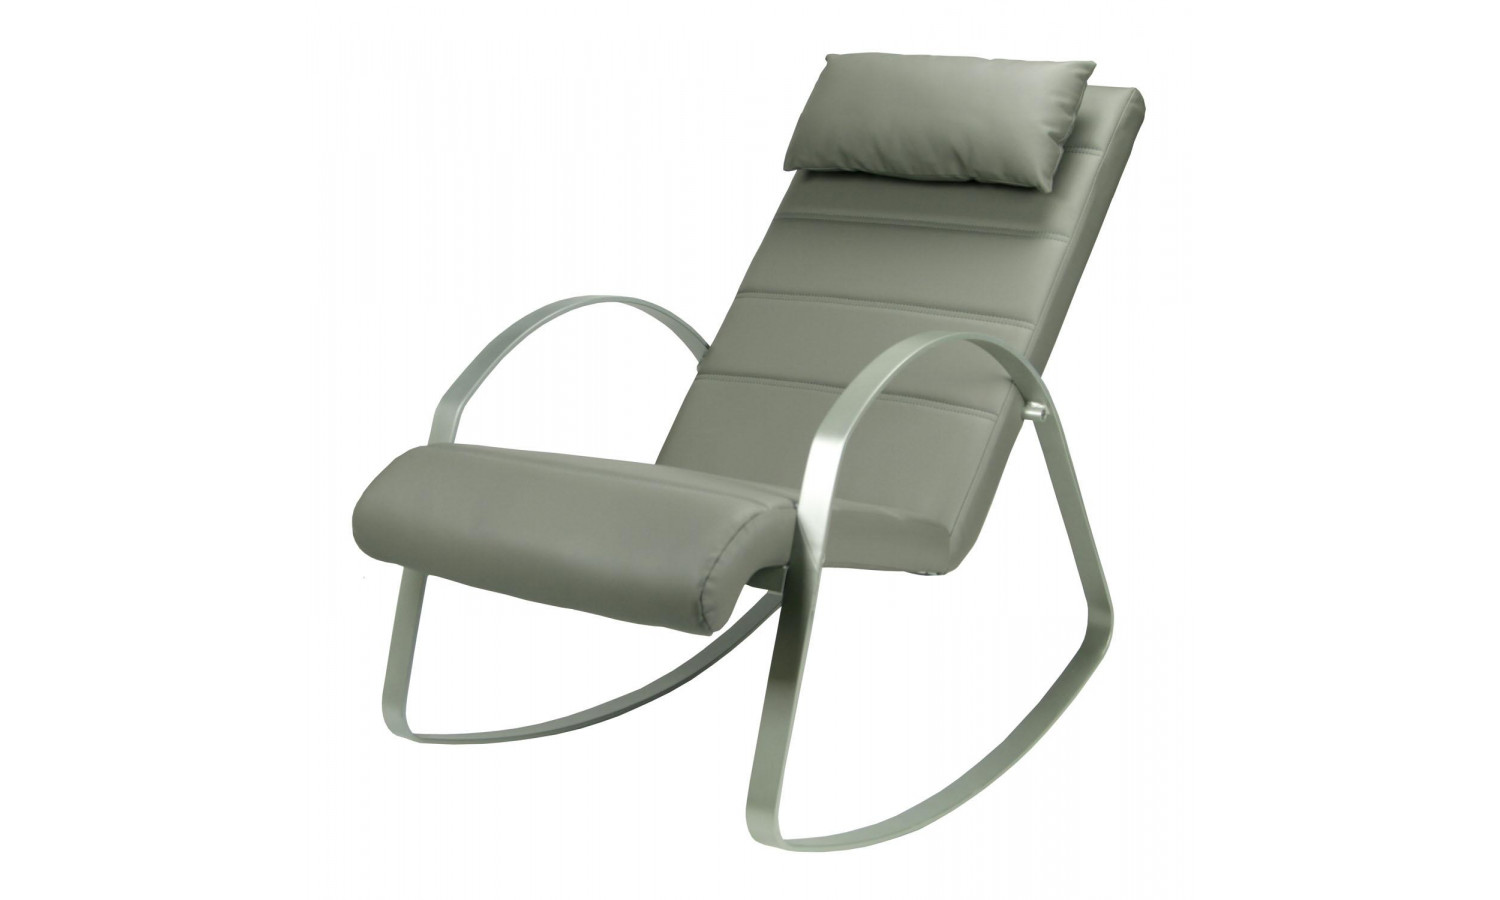 Кресло-качалка  MK-5513-GR 62х125х80 см Серый